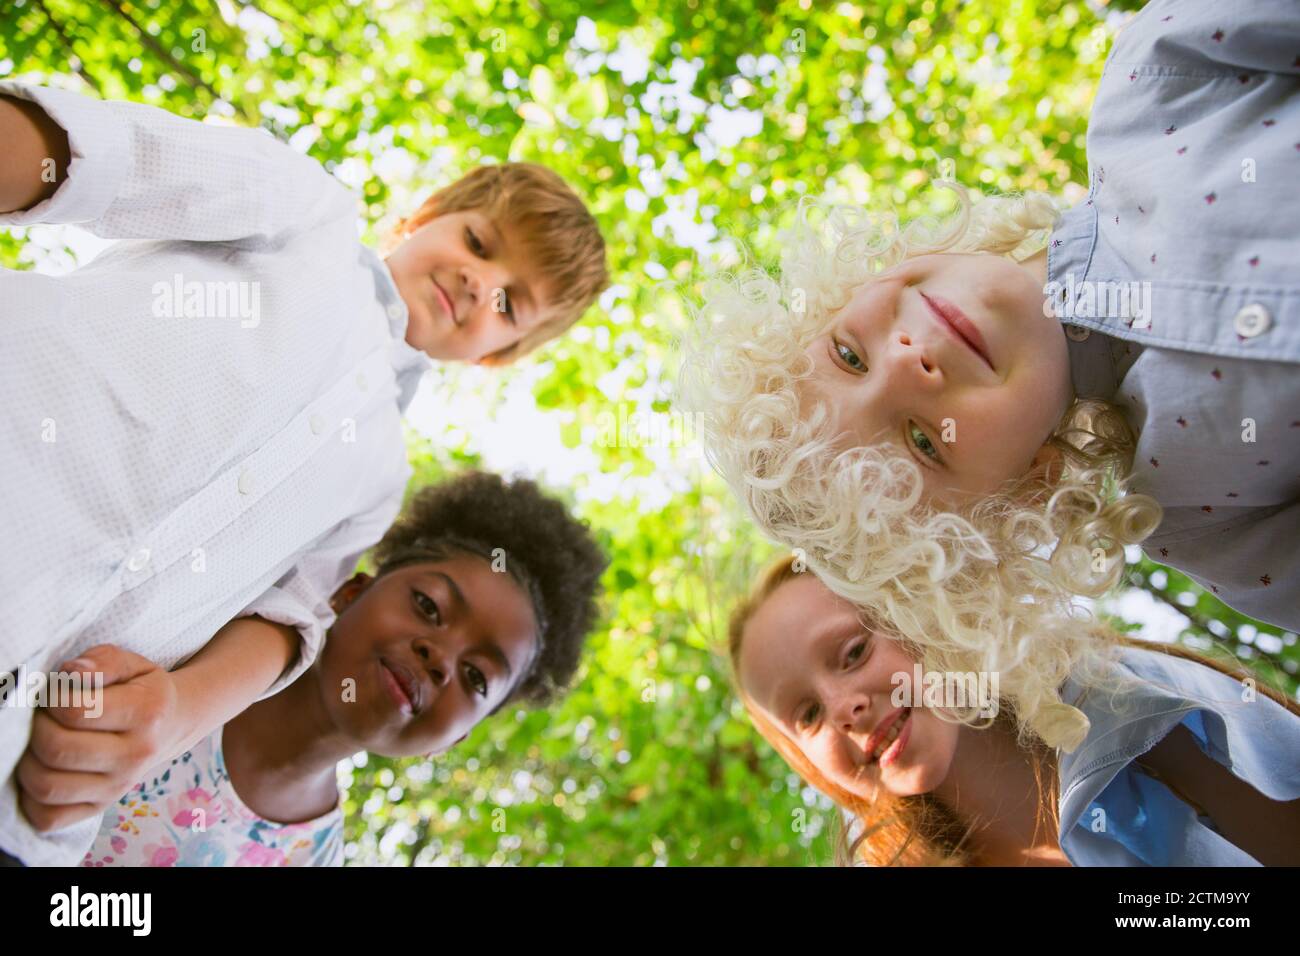 Équipe de rêve. Groupe interracial d'enfants, de filles et de garçons jouant ensemble au parc en été. L'amitié n'a pas de race. Concept de bonheur, d'enfance, d'éducation, de diversité. Soyez heureux et sincère. Banque D'Images